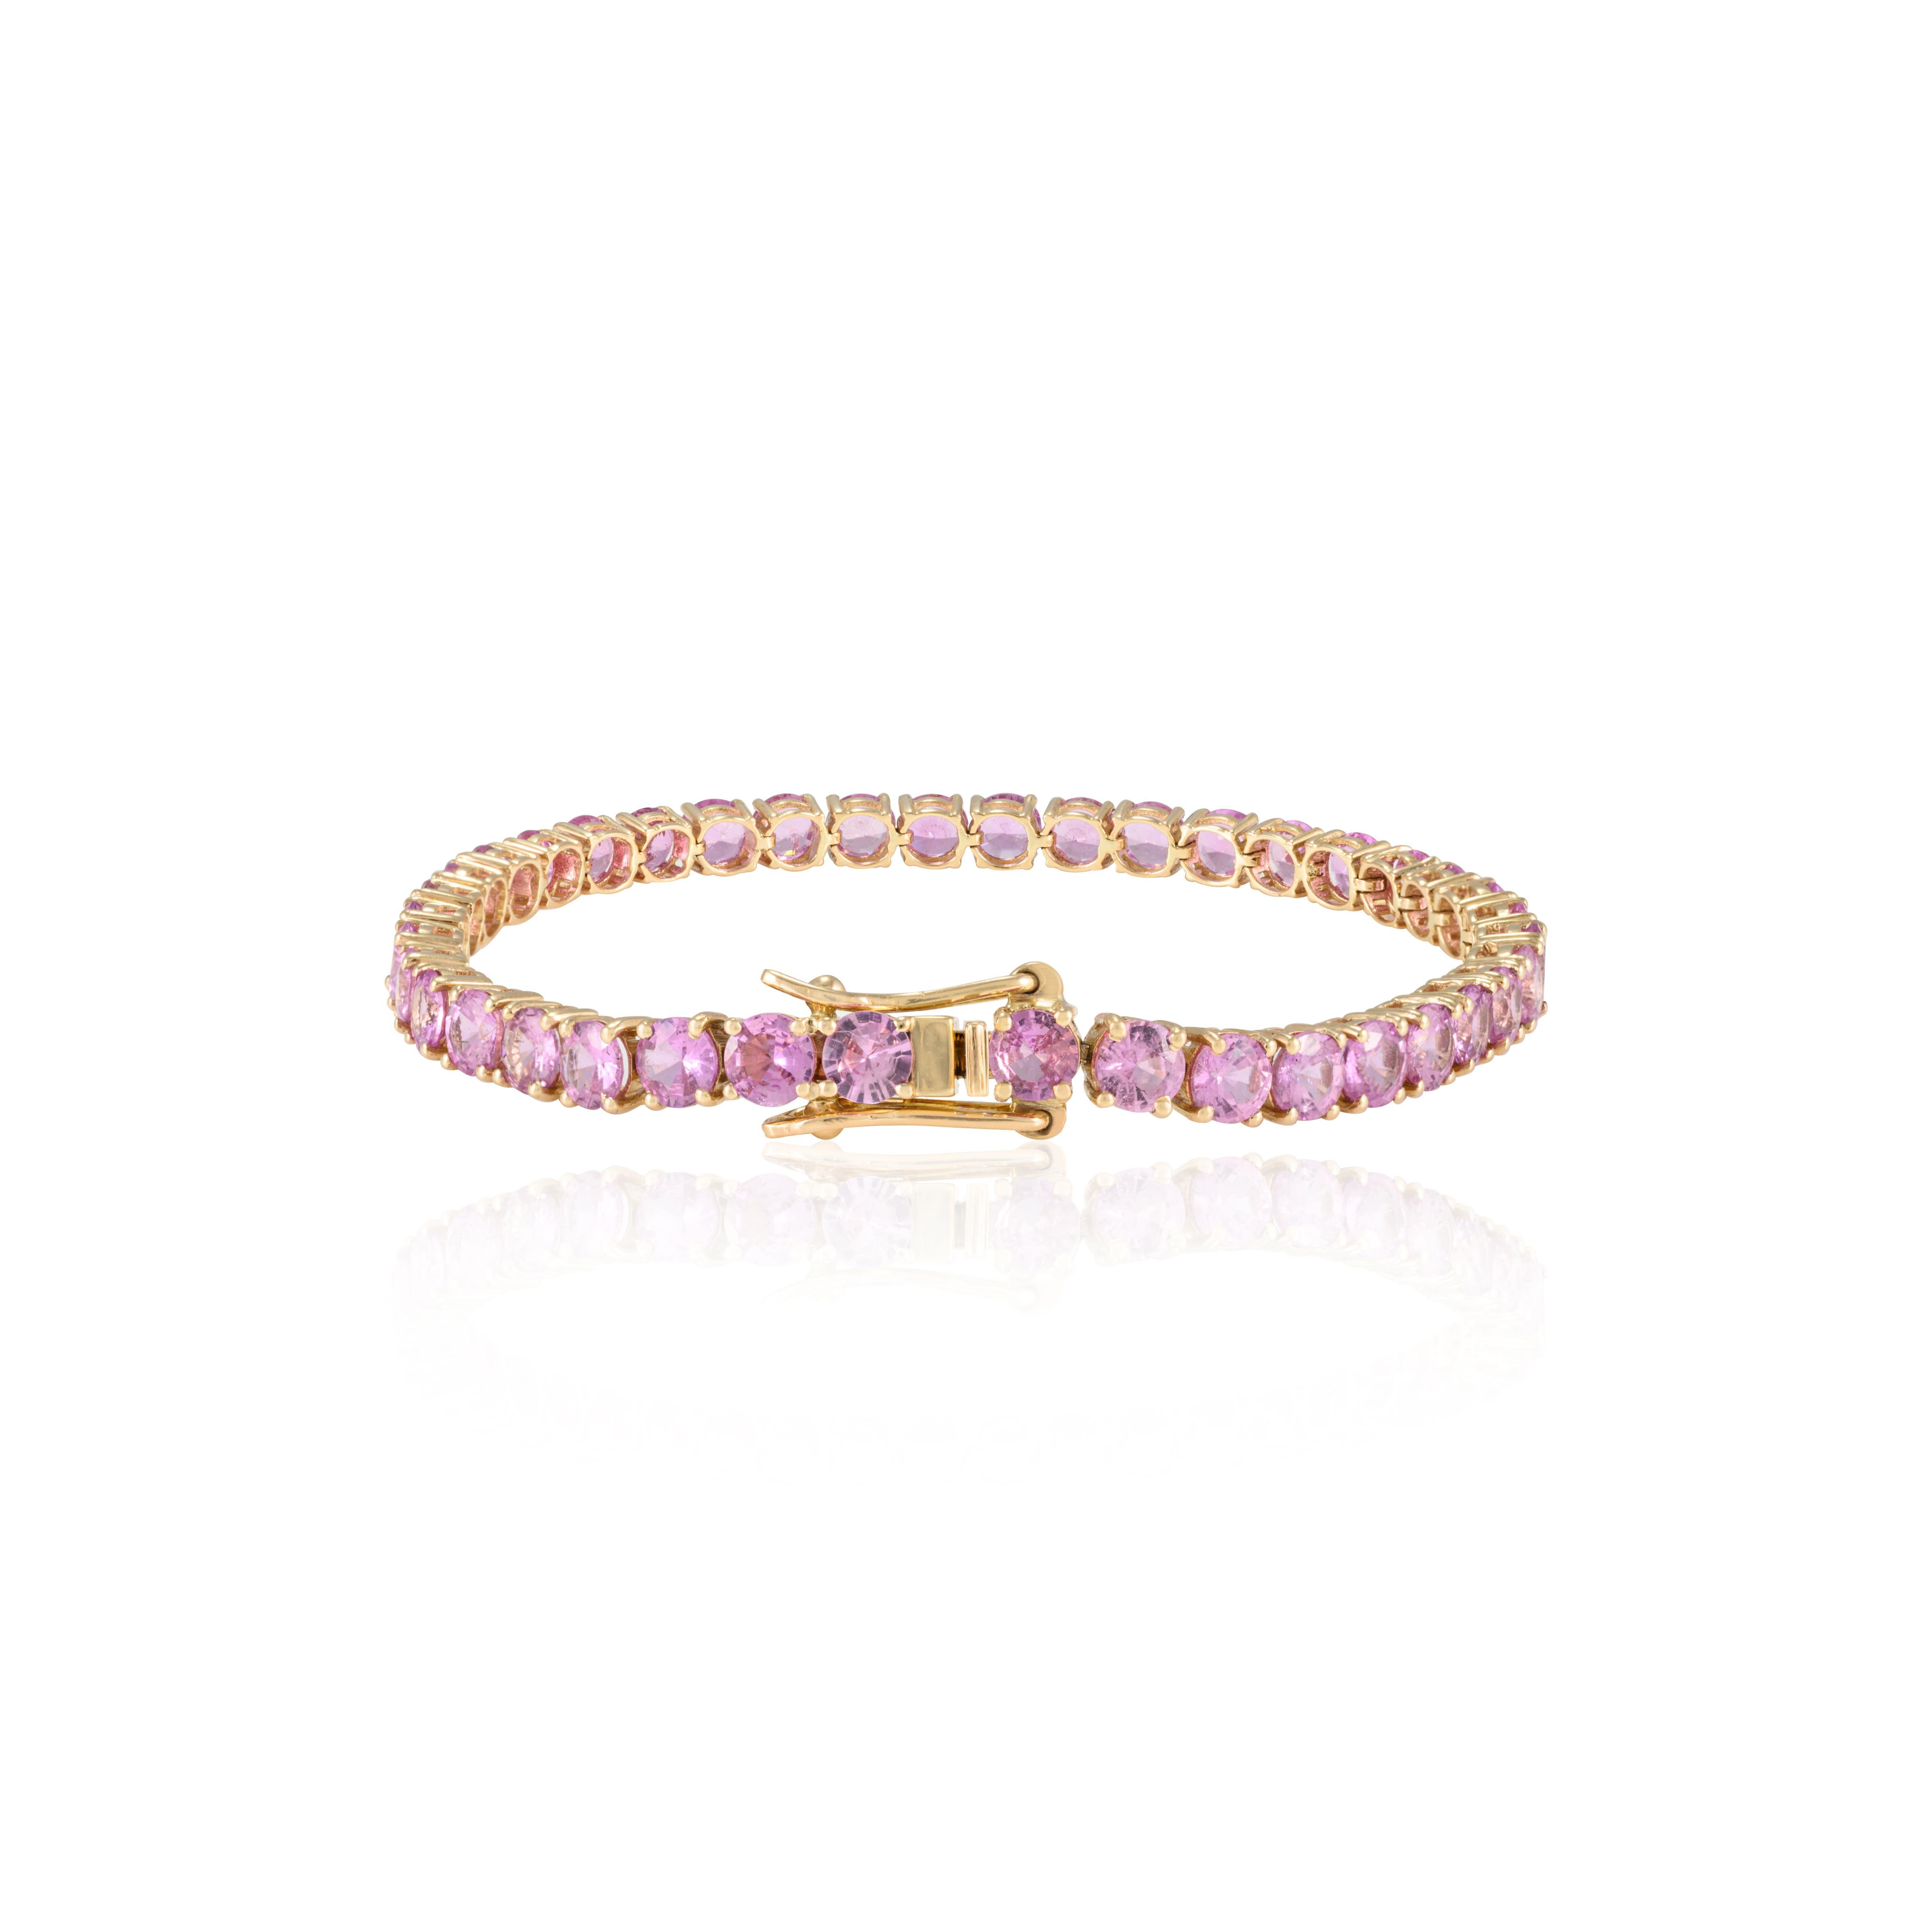 Ce brillant bracelet de tennis en saphir rose en or 14 carats met en valeur un saphir rose naturel de 14,83 carats, étincelant à l'infini. Il mesure 7 pouces de long. 
Le saphir stimule la concentration et réduit le stress. 
Conçue avec un saphir